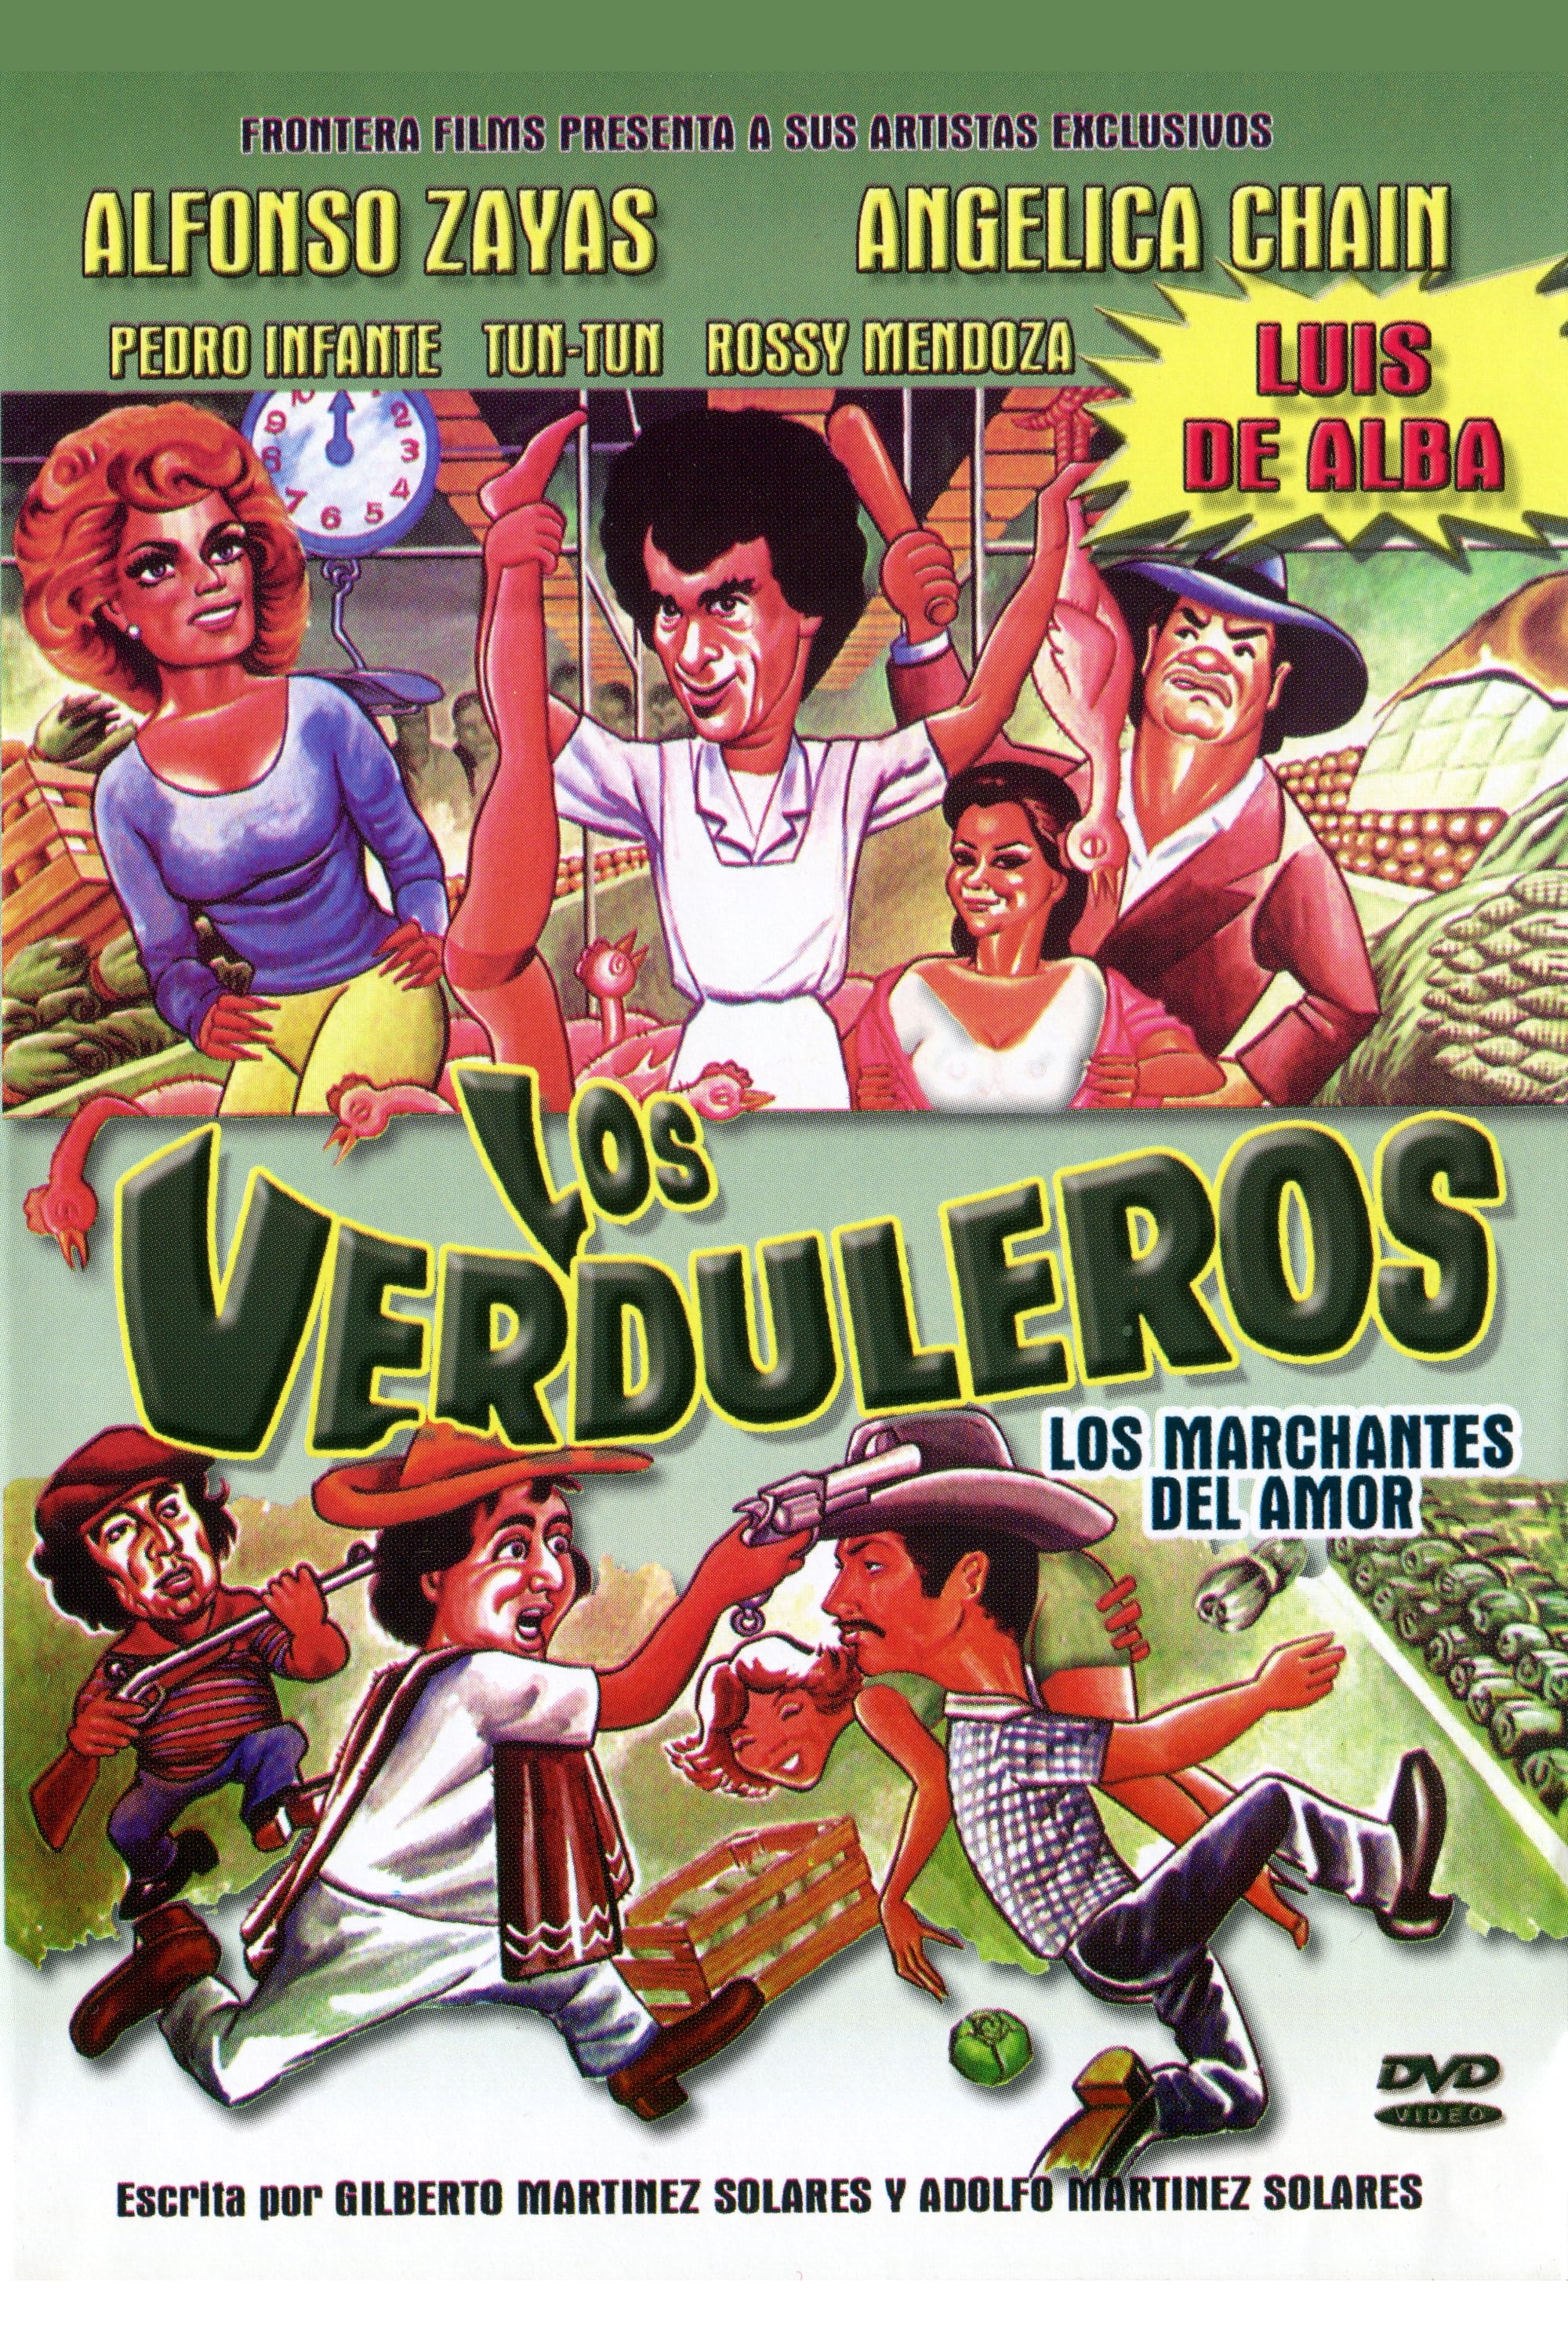 Los verduleros (1986)